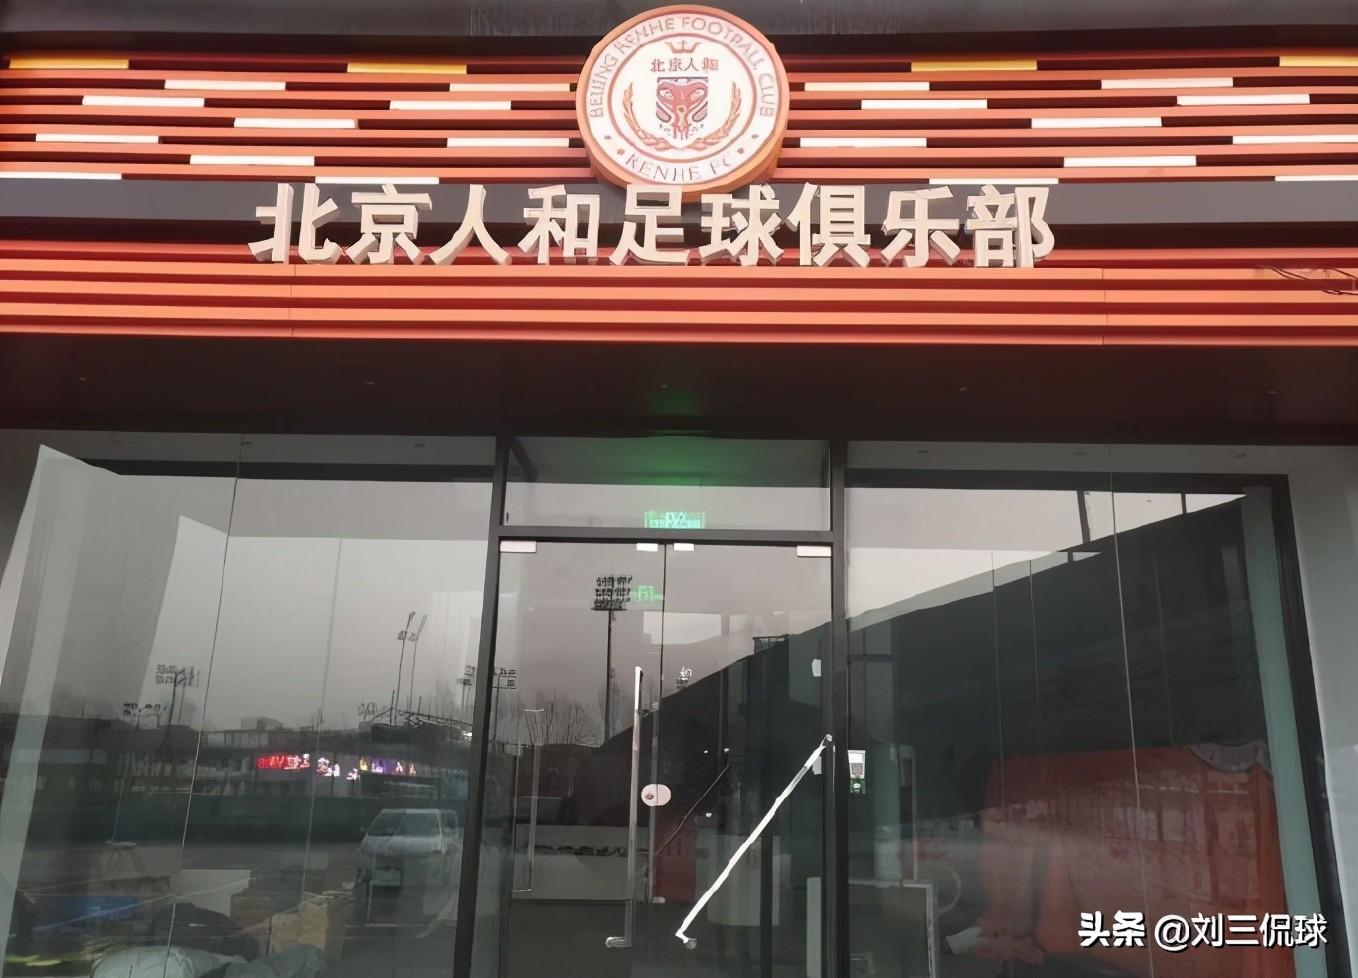 北京人和俱乐部人去楼空荣誉室搬空 成首支不欠薪解散的球队